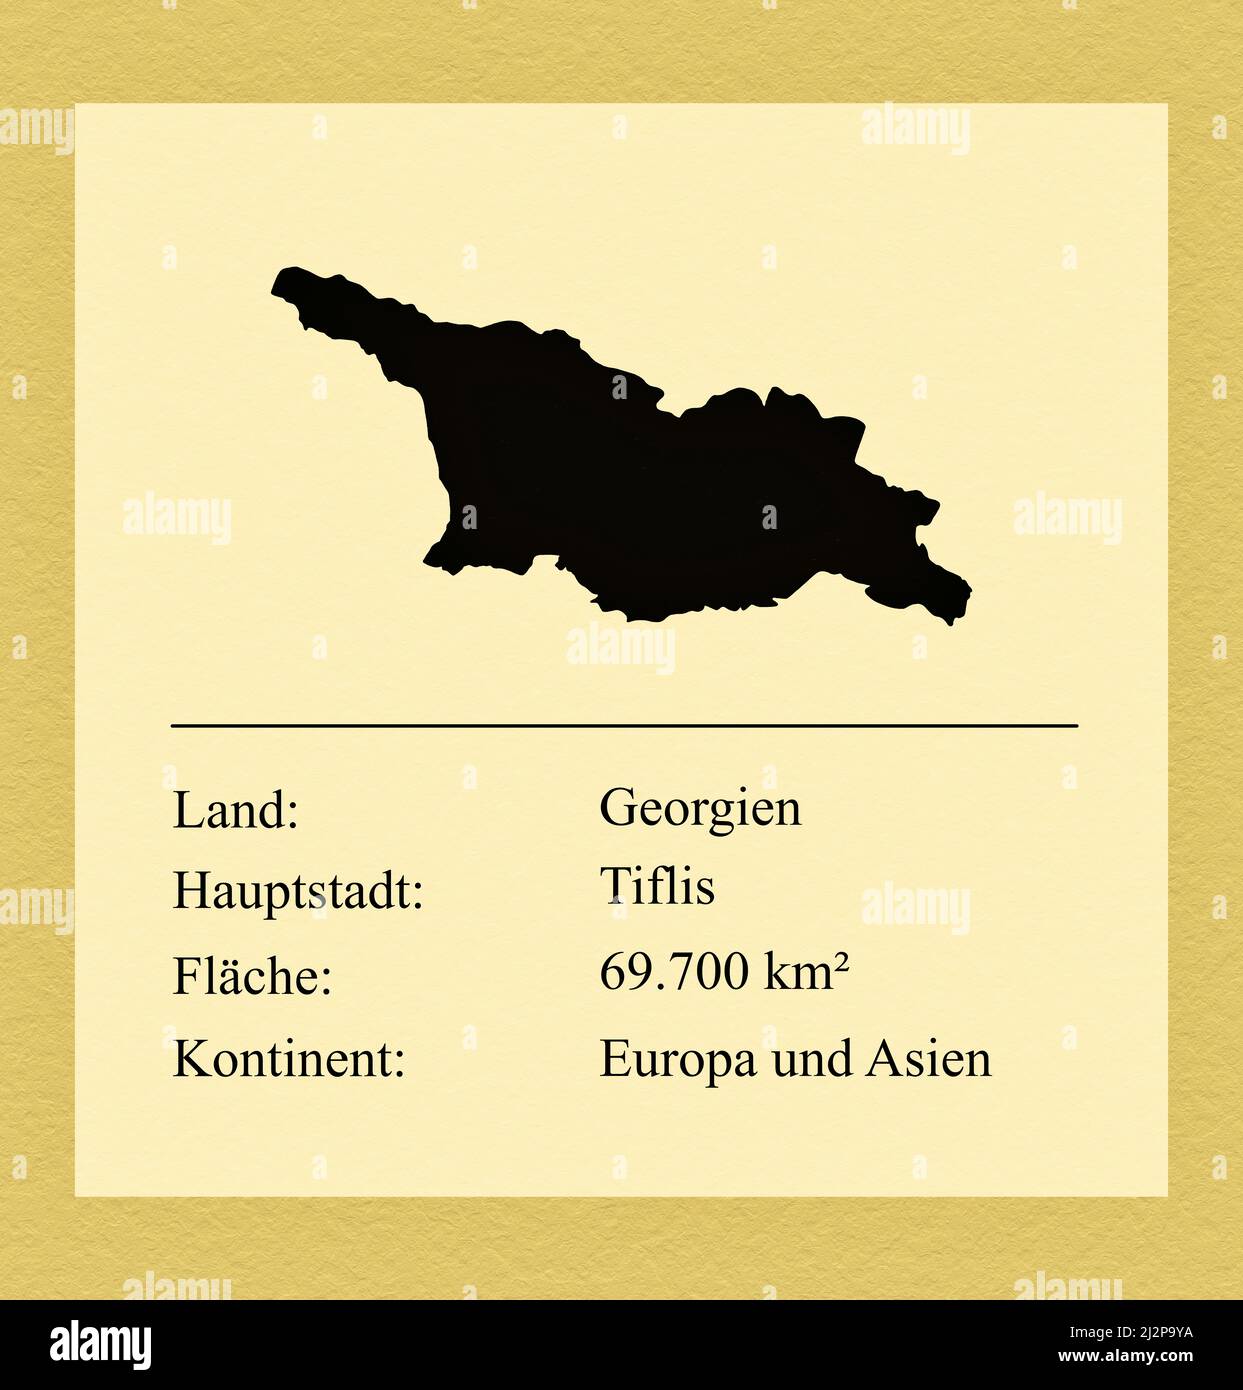 Umrisse des Landes Georgien, darunter ein kleiner Steckbrief mit Ländernamen, Hauptstadt, Fläche und Kontinent Foto de stock